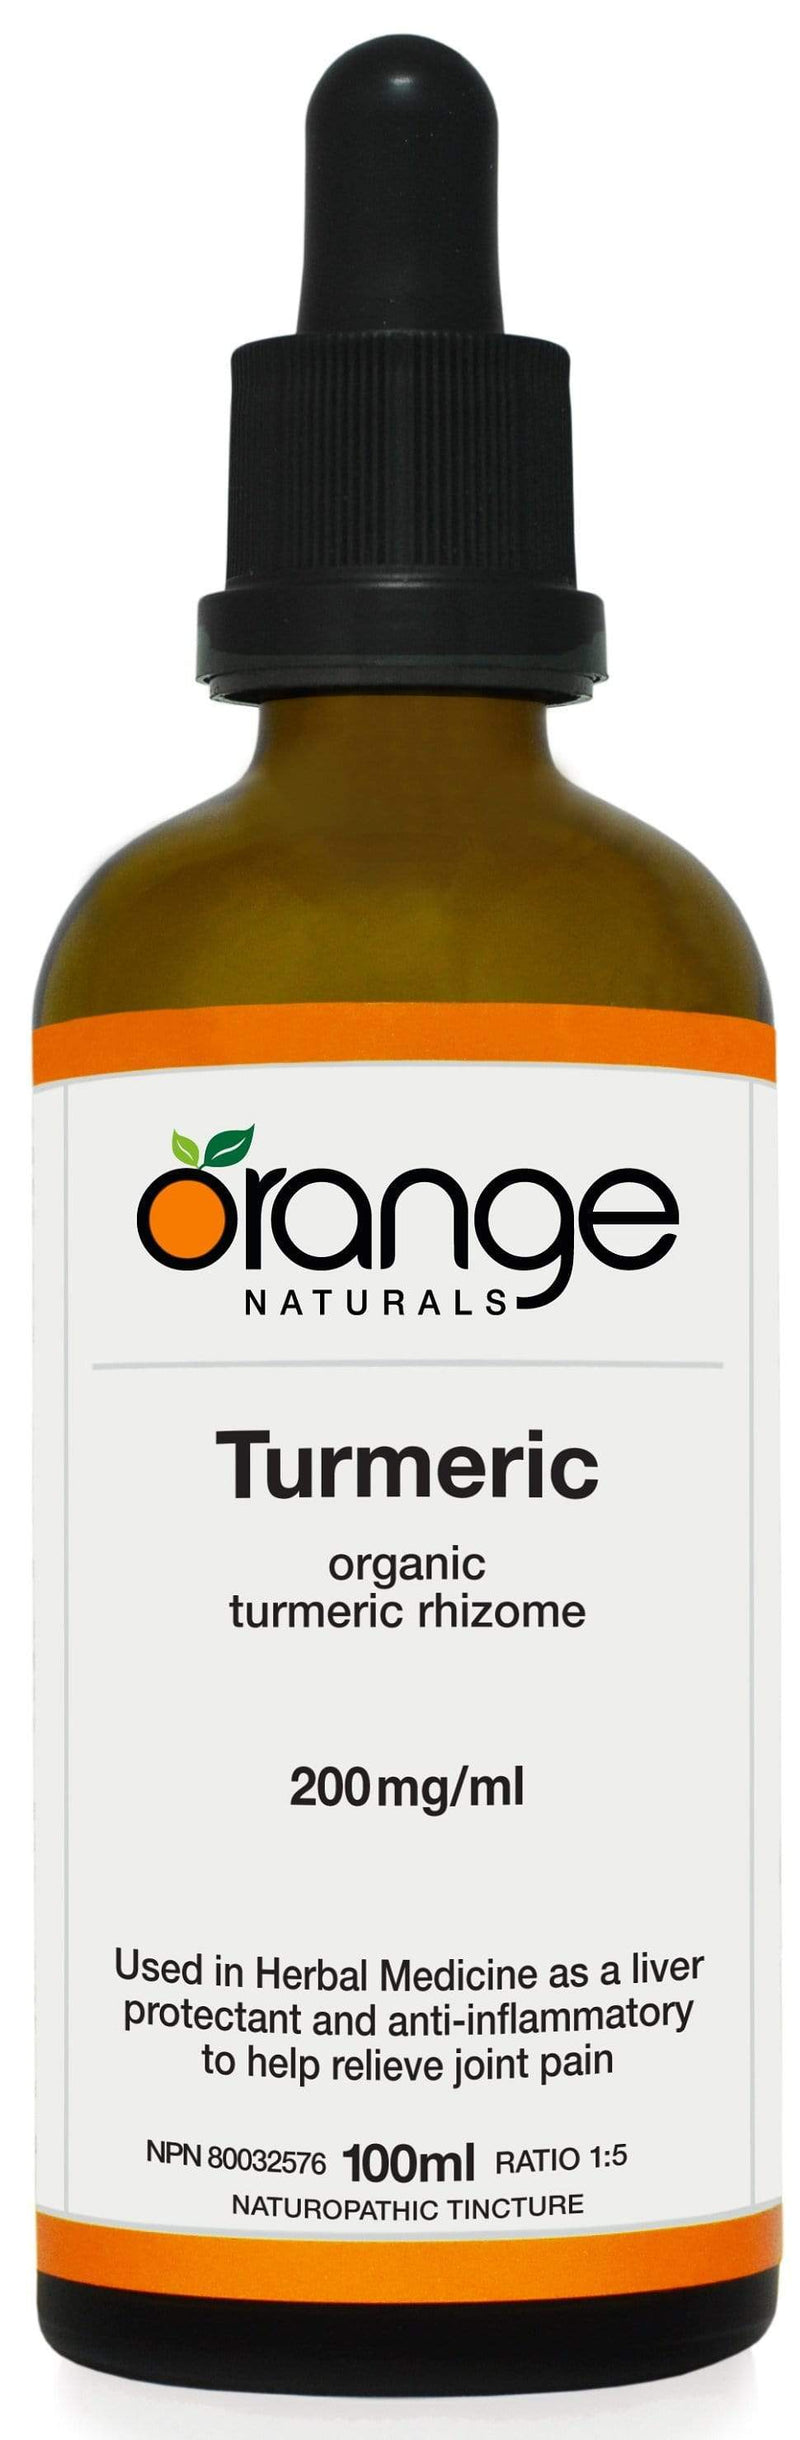 Orange Naturals Turmeric